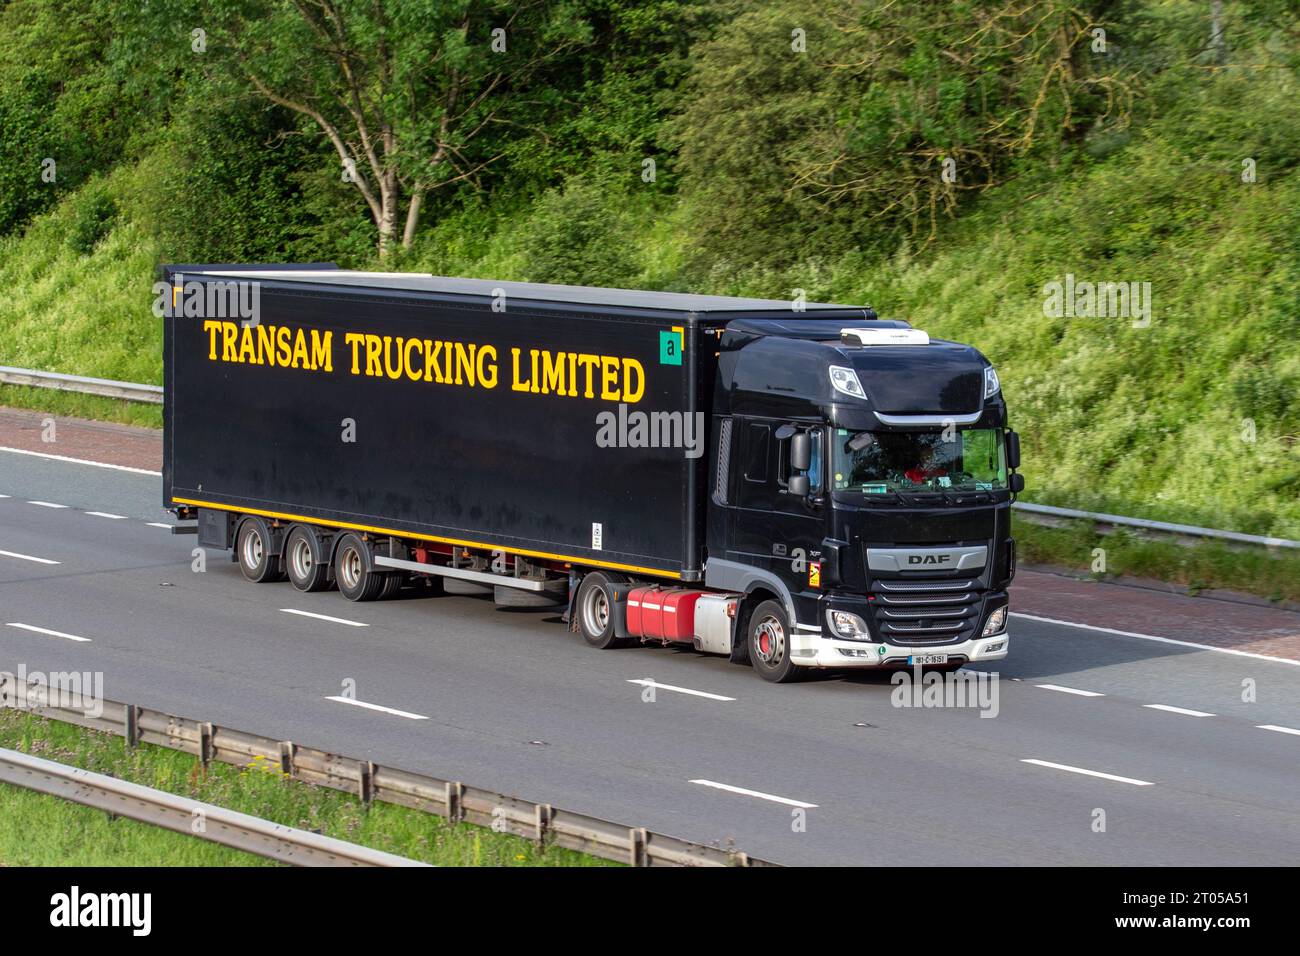 TransAm Trucking Limited - Transamerican noir. Divertissement transport DAF XF ; voyager sur l'autoroute M6 dans le Grand Manchester, Royaume-Uni Banque D'Images